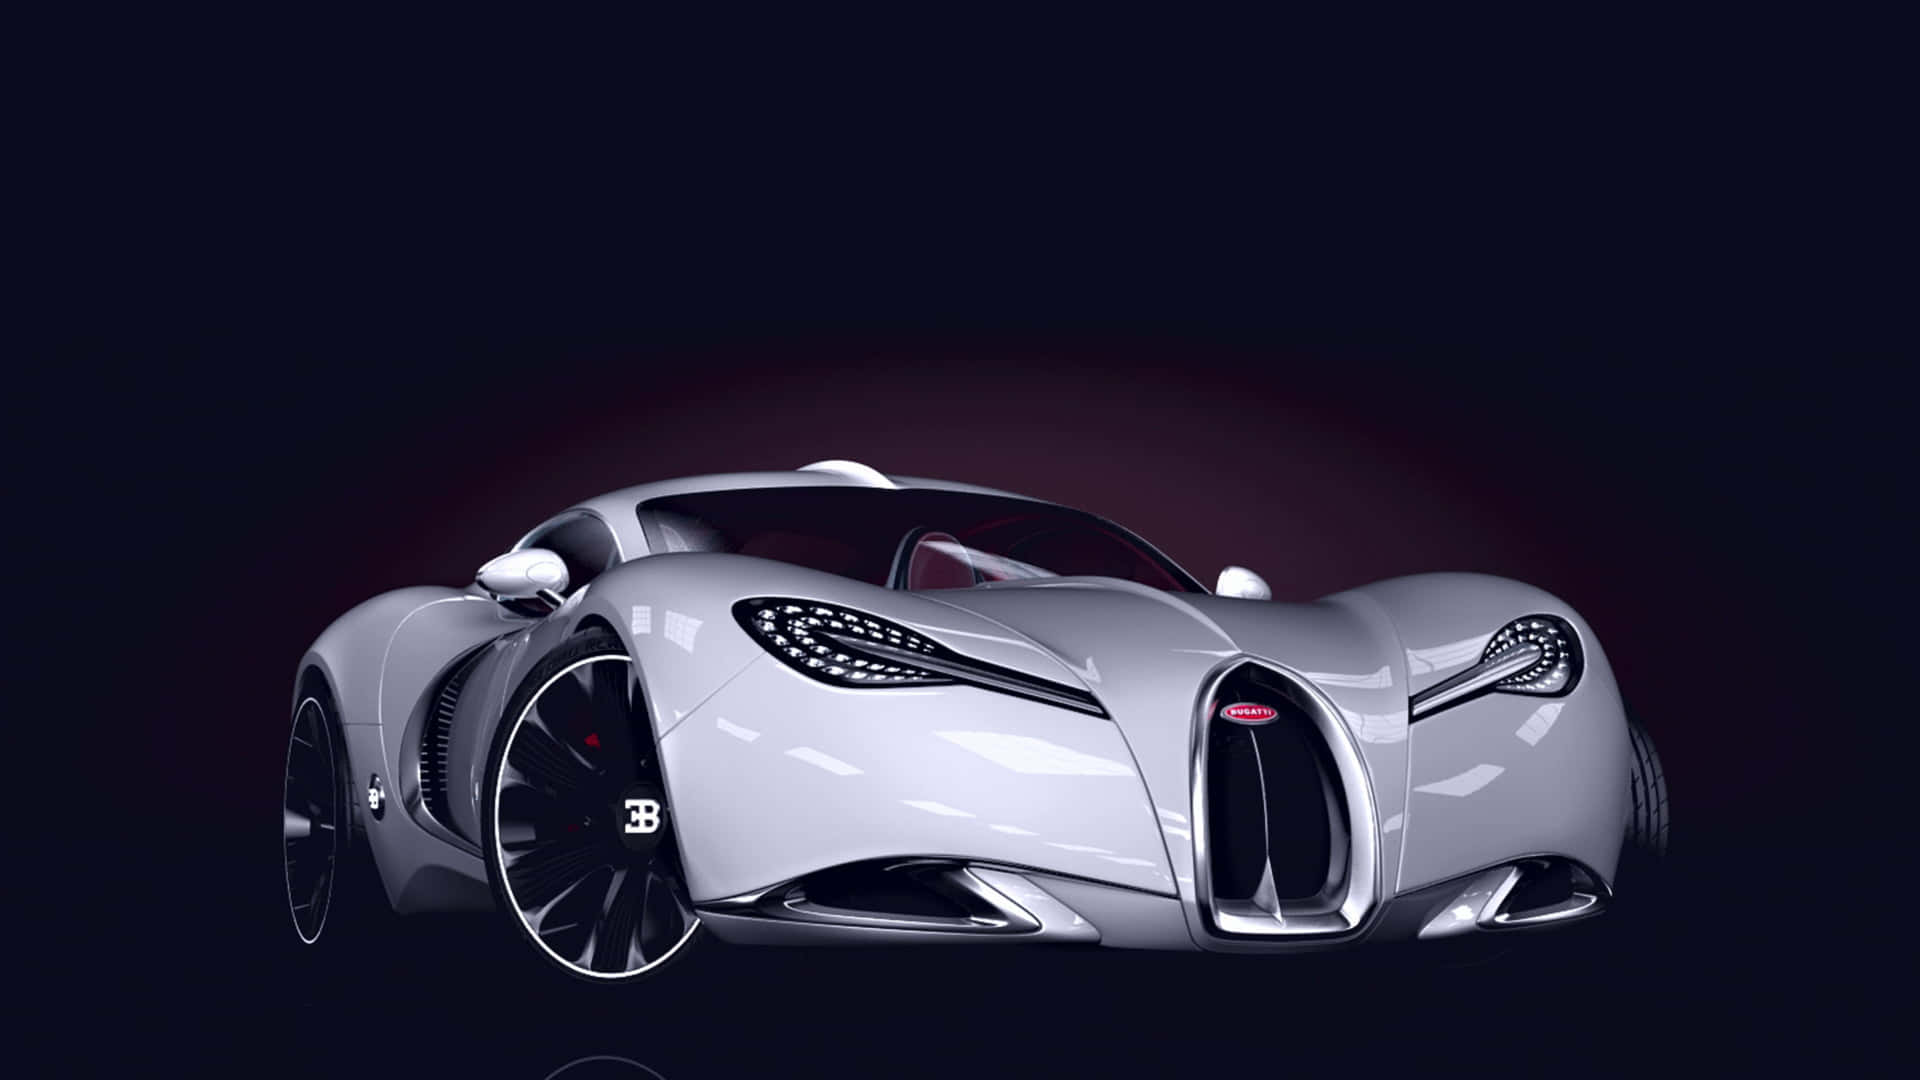 Beschleunigedein Leben Mit Einem Bugatti Wallpaper